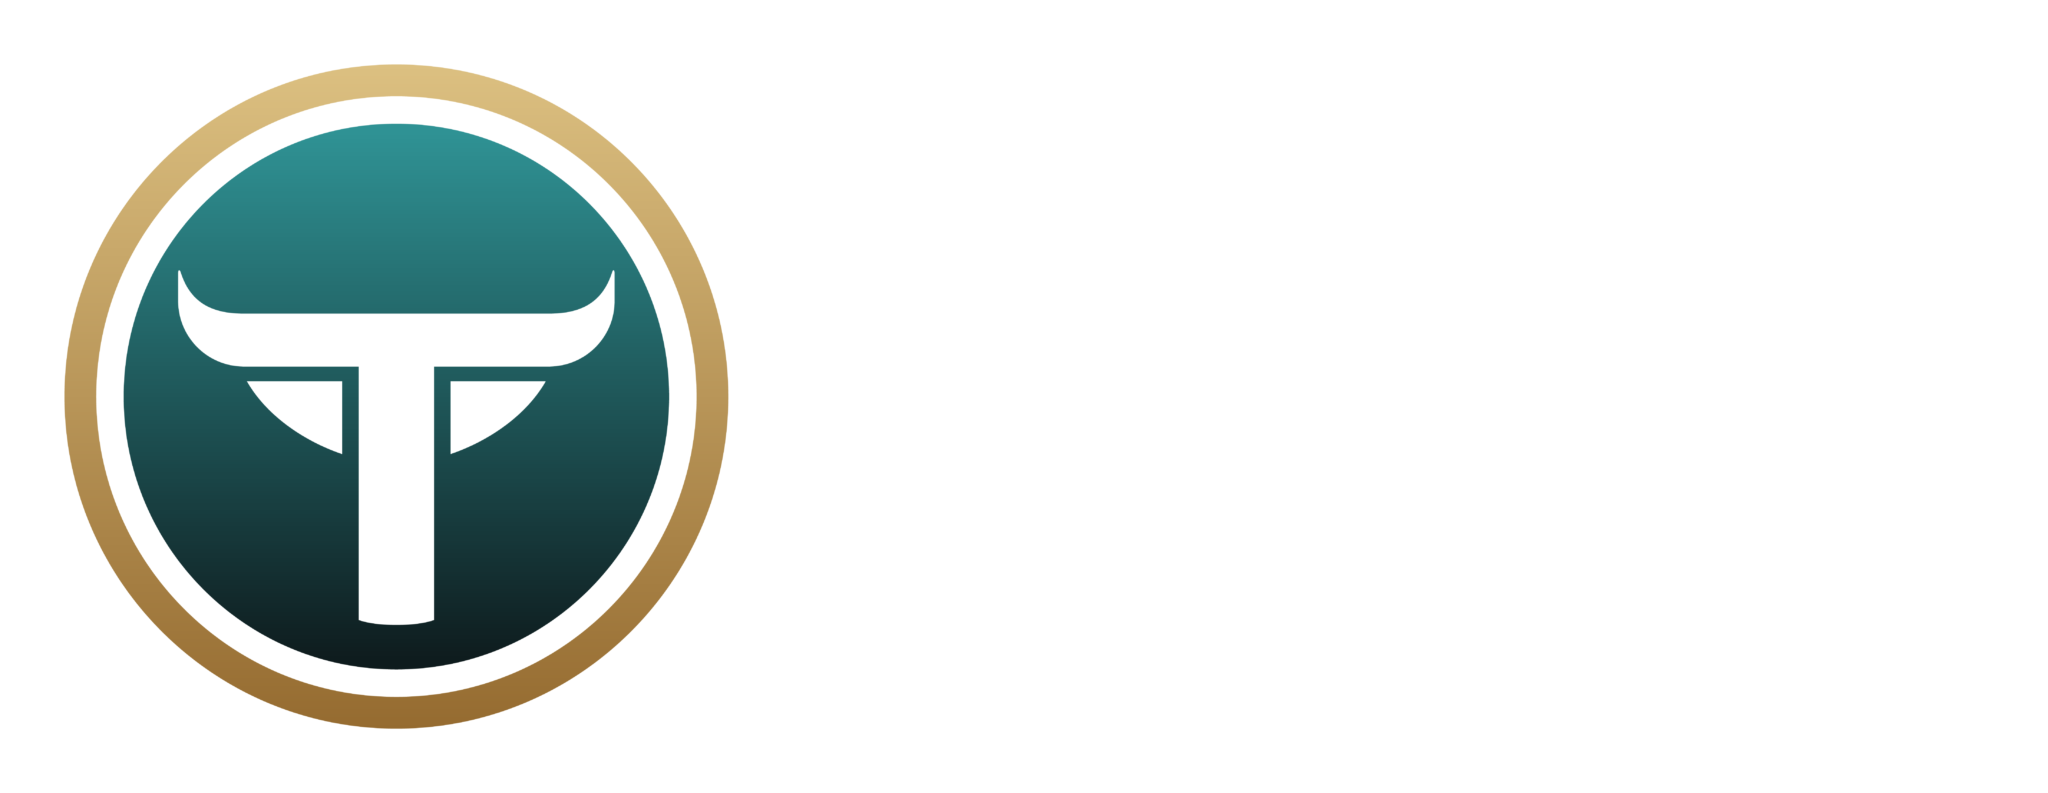 Taurus Branding Suite Master doc 47